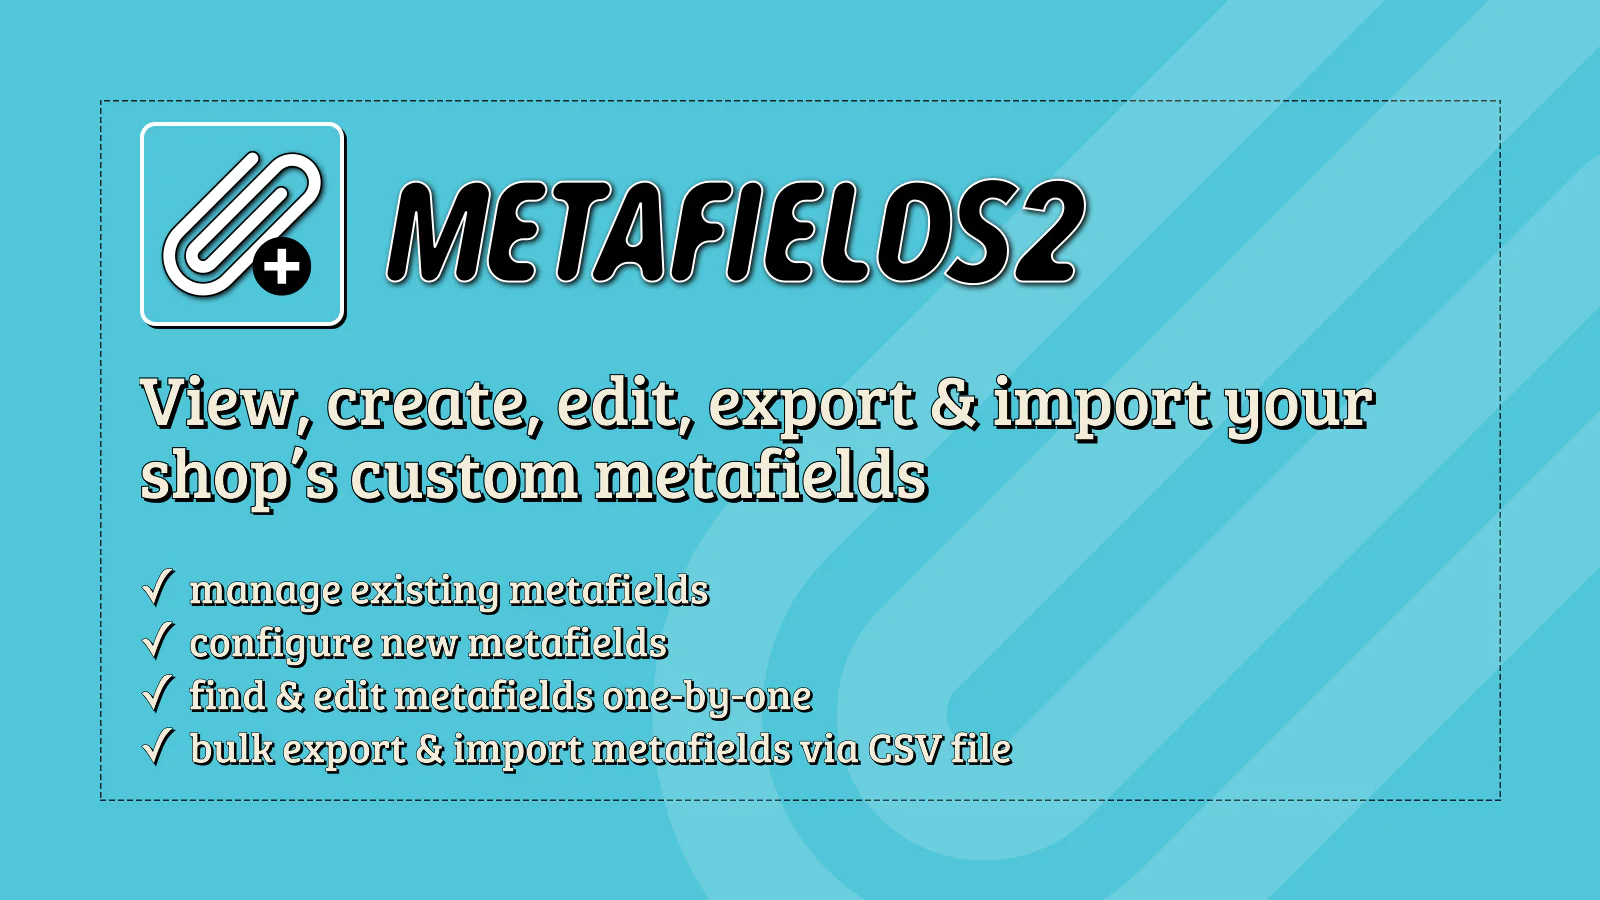 metafields2-app-view-create-edit